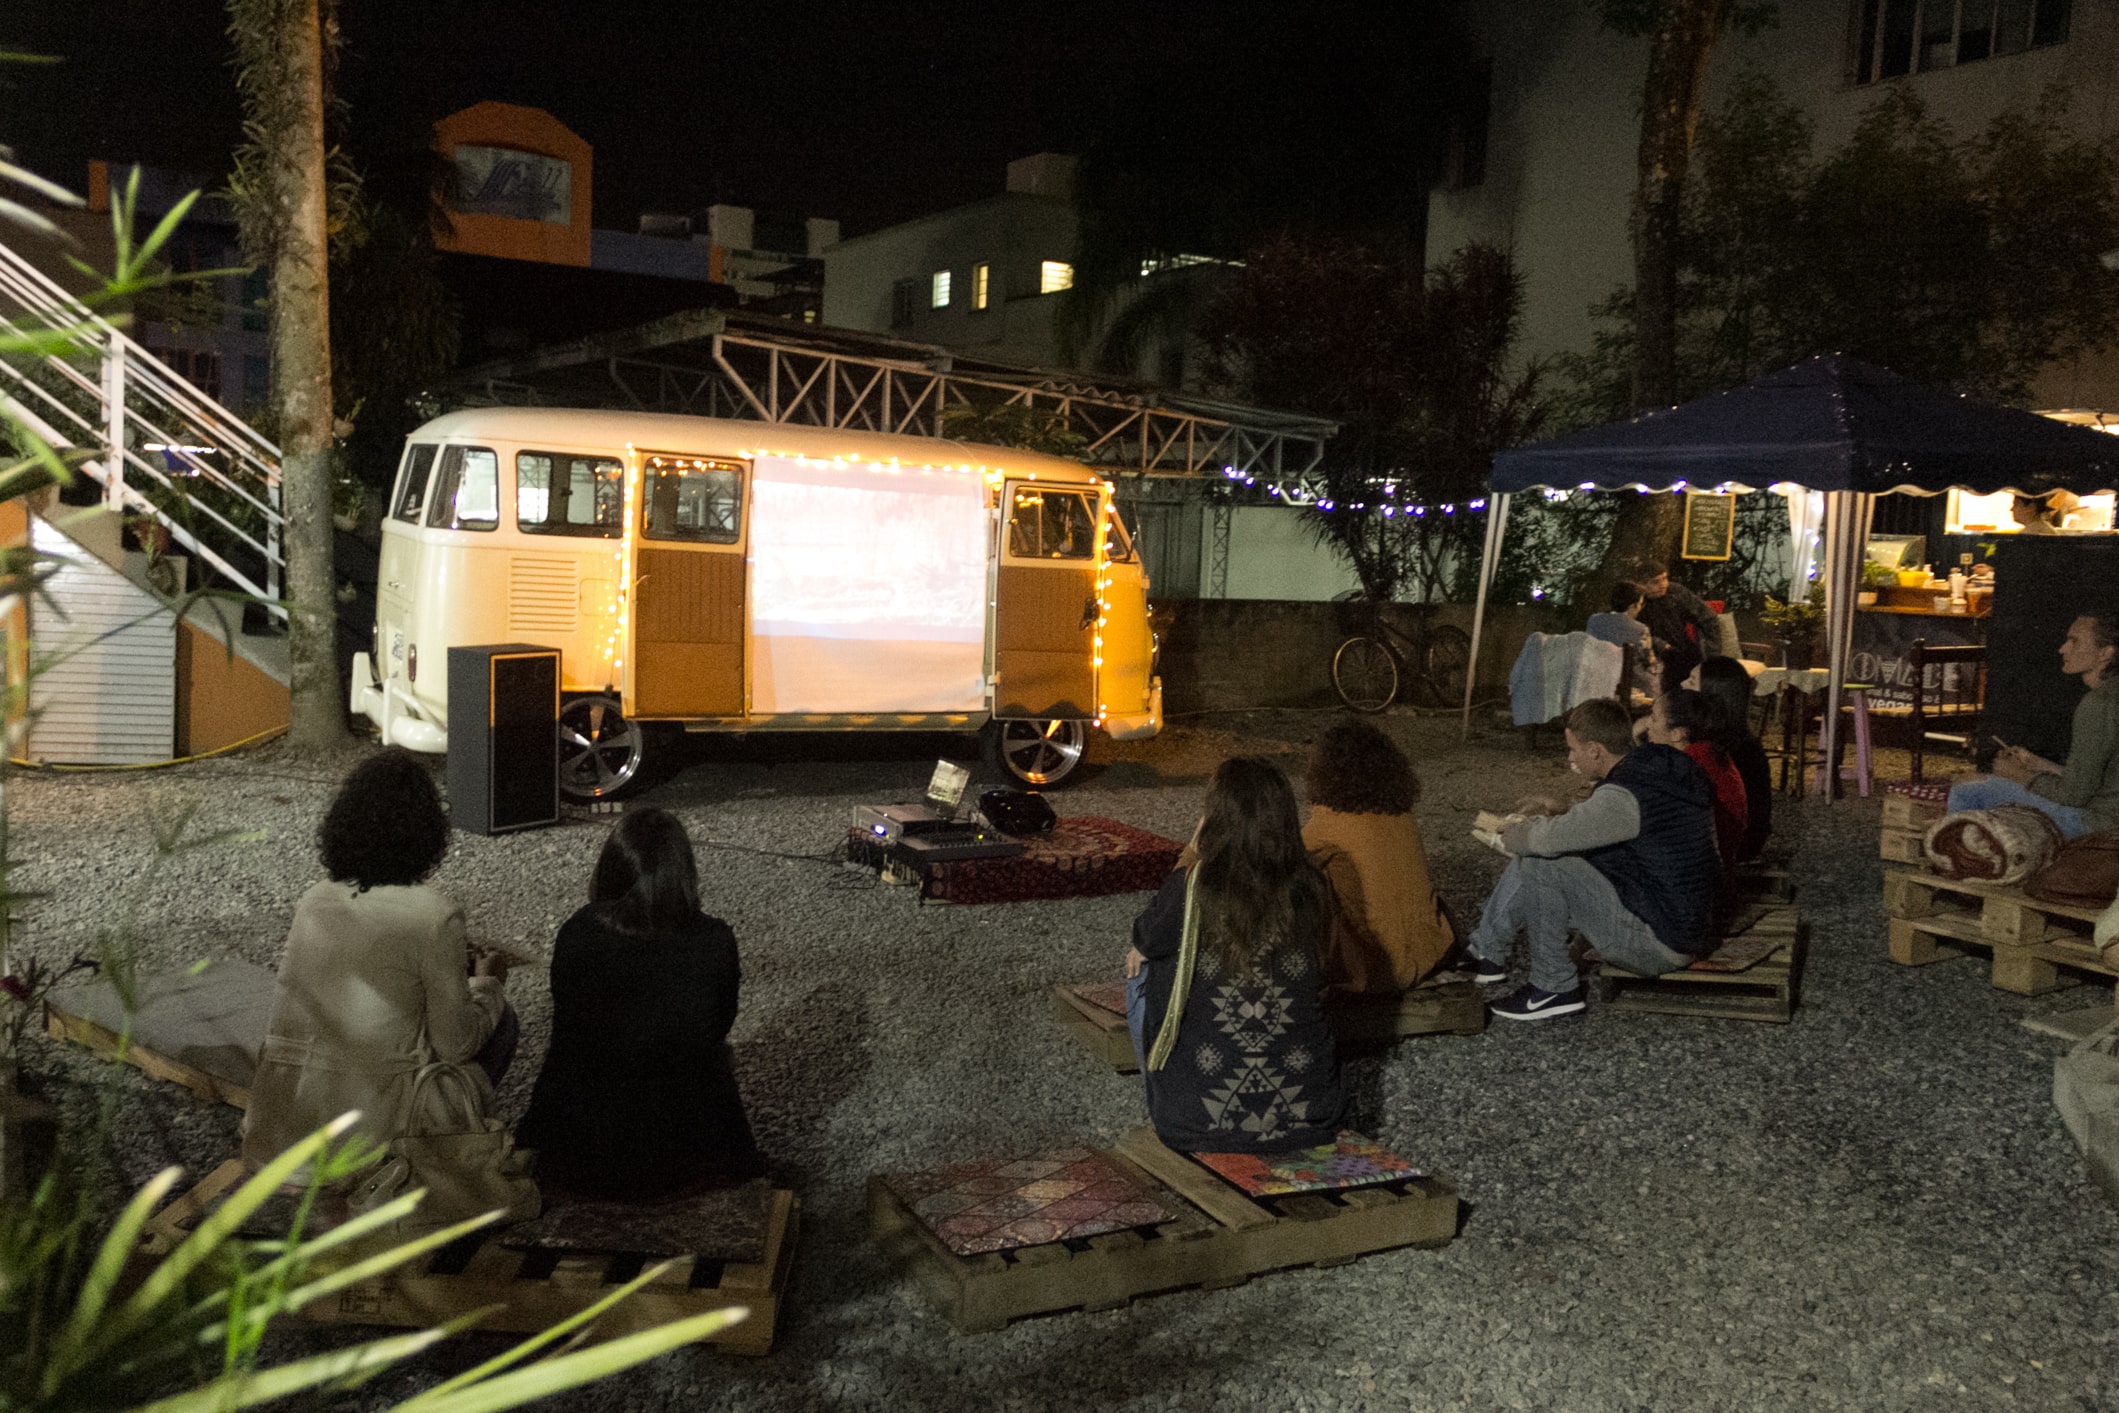 Em um local aberto pessoas sentadas em pallets de madeira no ch\xe3o. \xc9 noite e elas assistem a um filme projetado em uma tela fixada na porta de uma kombi amarela.